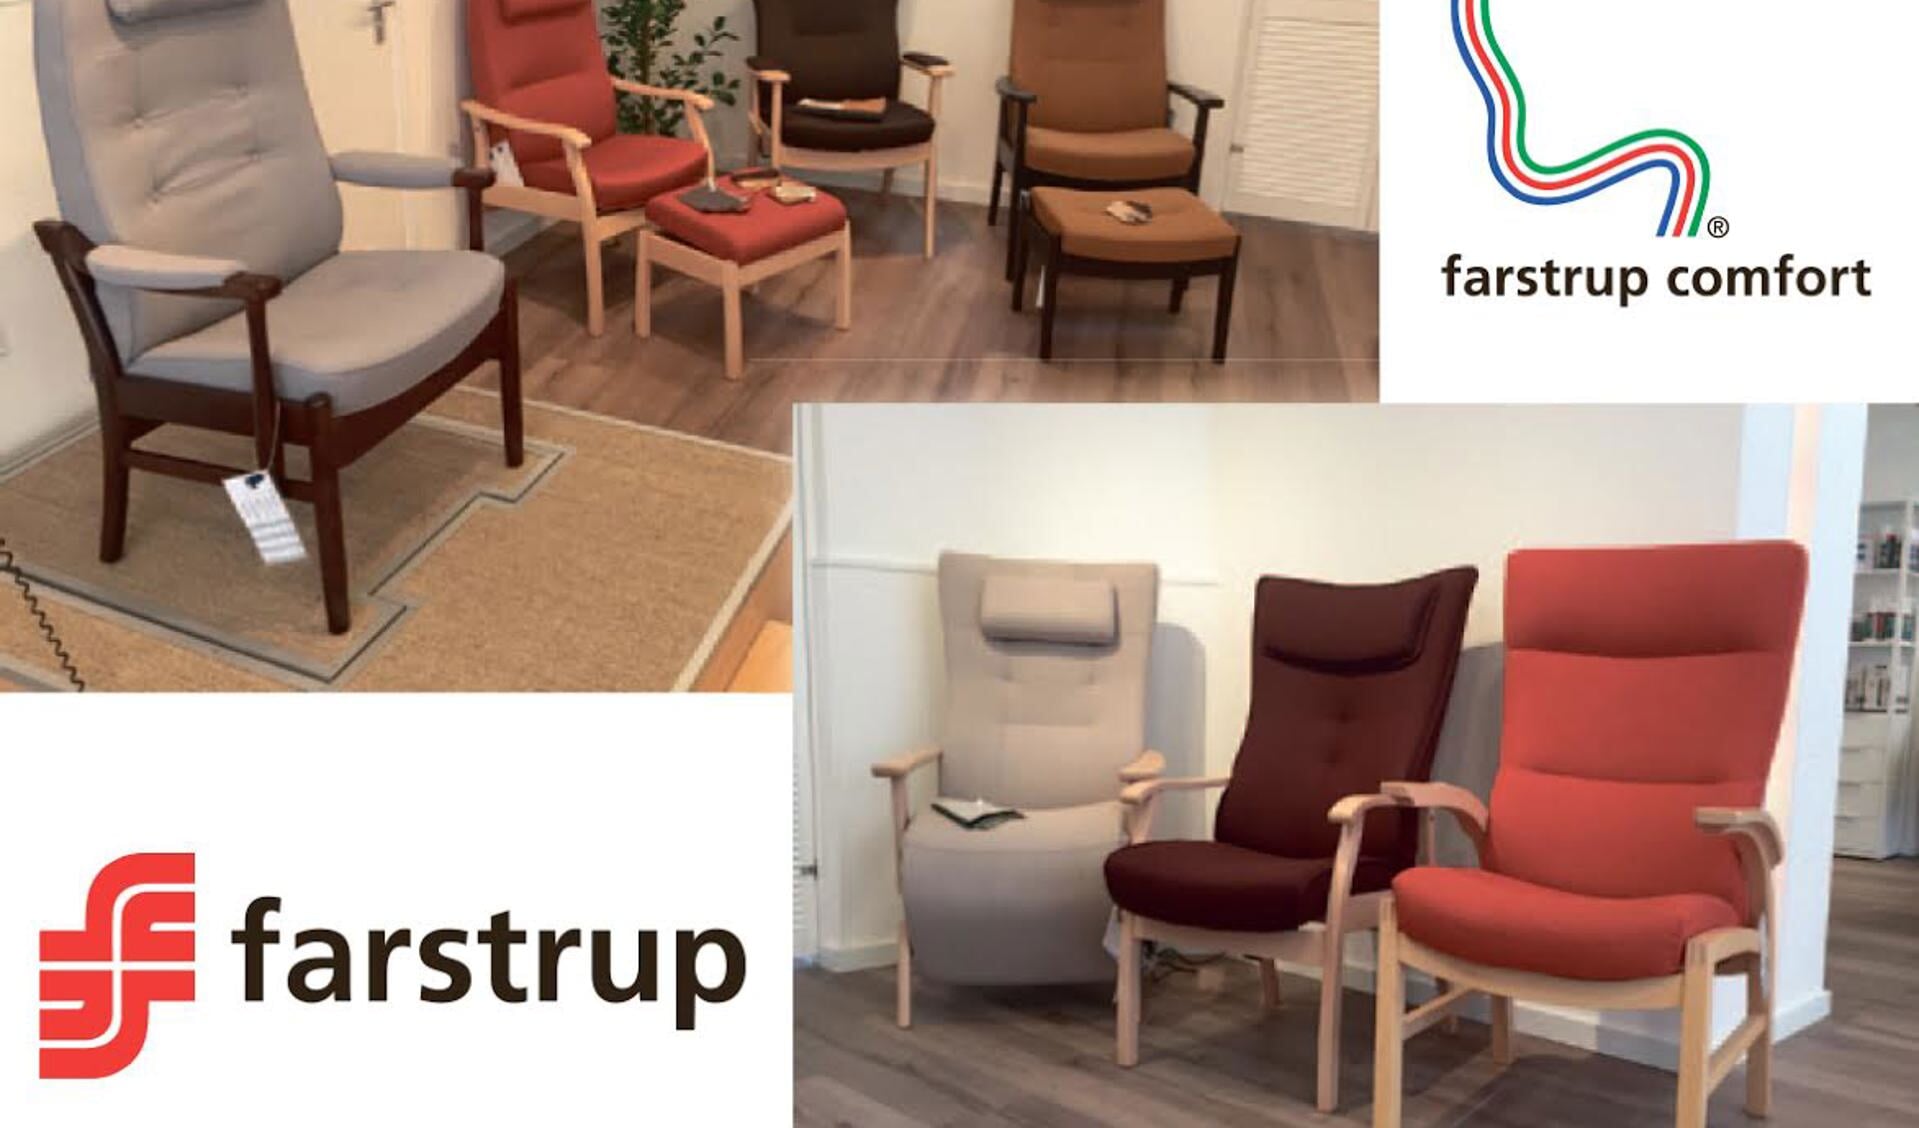 Bij Daan van Bergen worden onder meer fauteuils van Farstrup verkocht. 